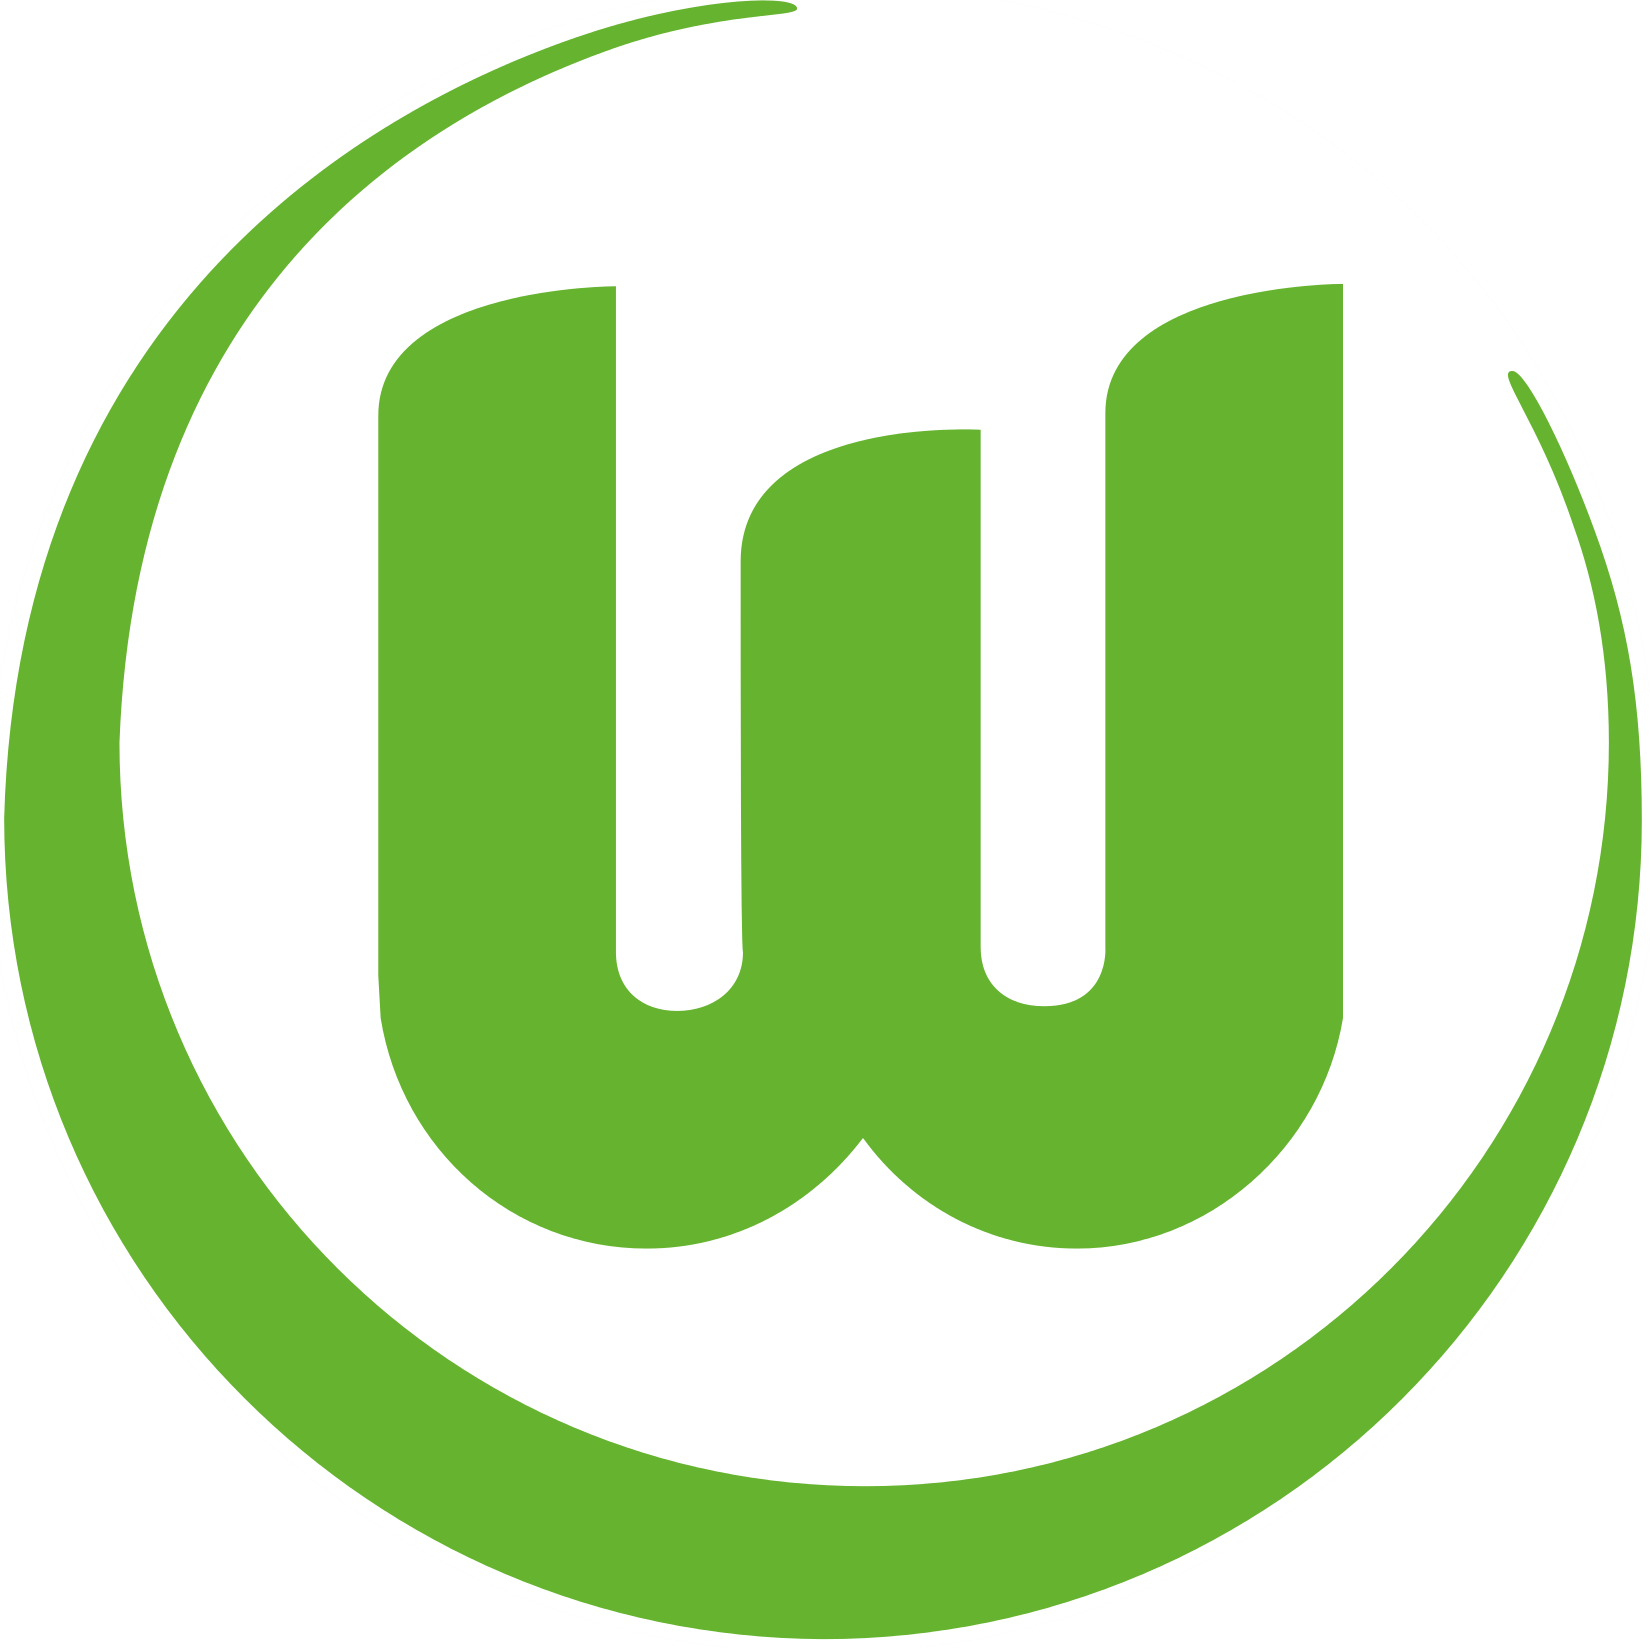 Wappen VfL Wolfsburg 1945 diverse  41939